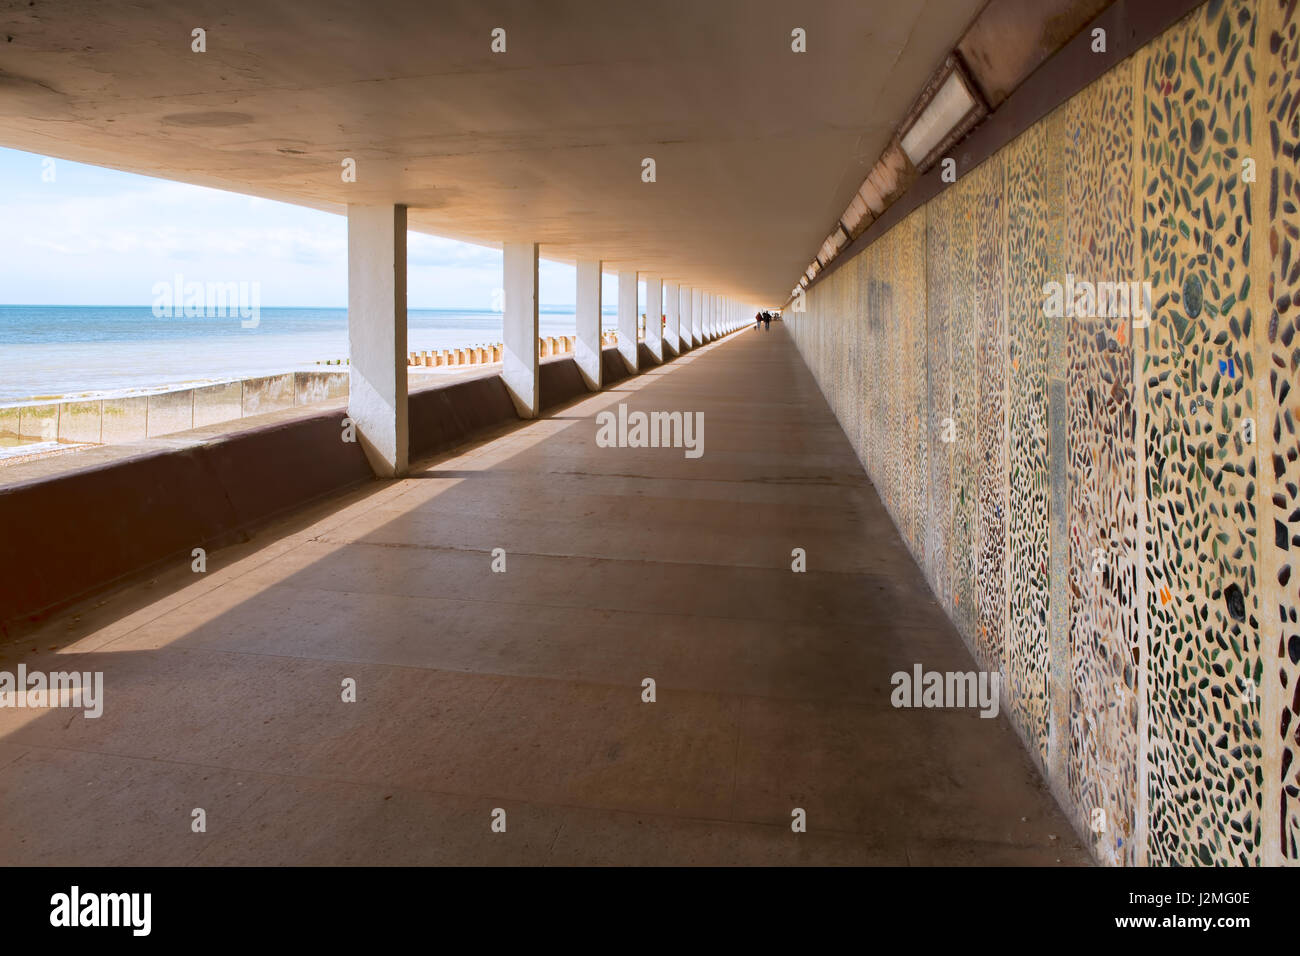 Un hôtel de bord de trottoir de béton couvert de mosaïques-pattern wall, sur la mer d'un côté et forte des lignes directrices de l'appareil photo. Banque D'Images